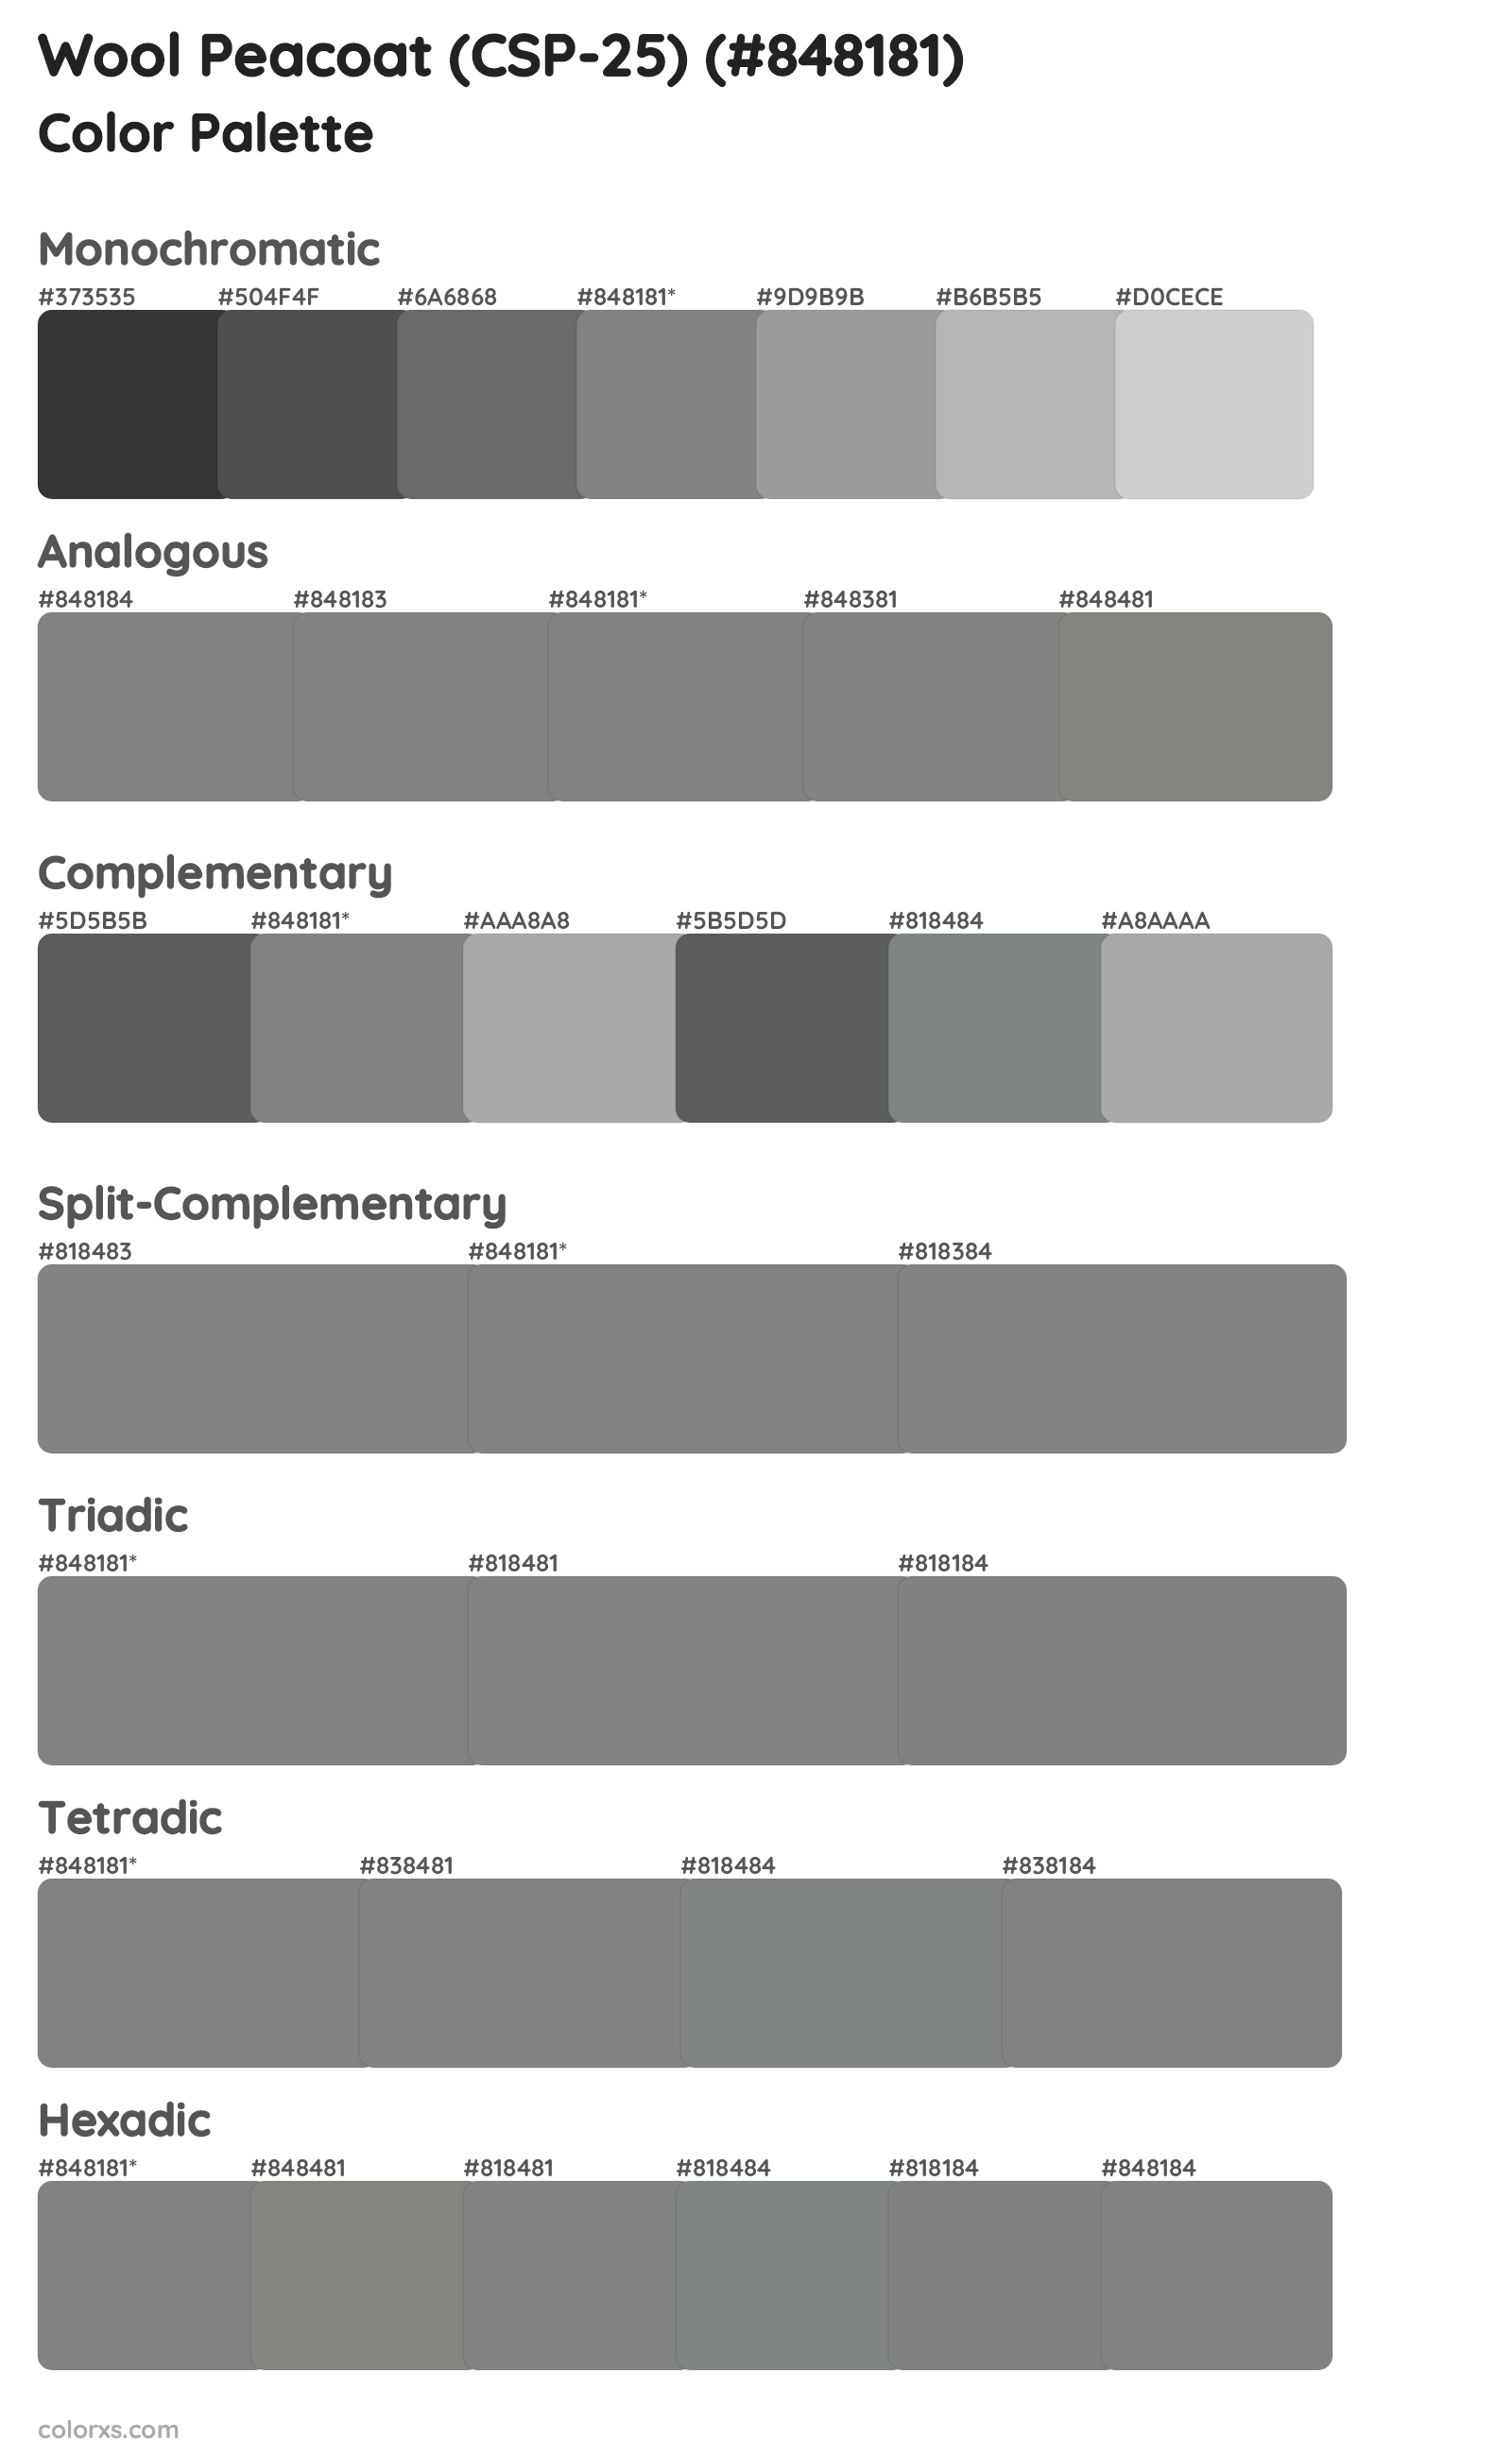 Wool Peacoat (CSP-25) Color Scheme Palettes